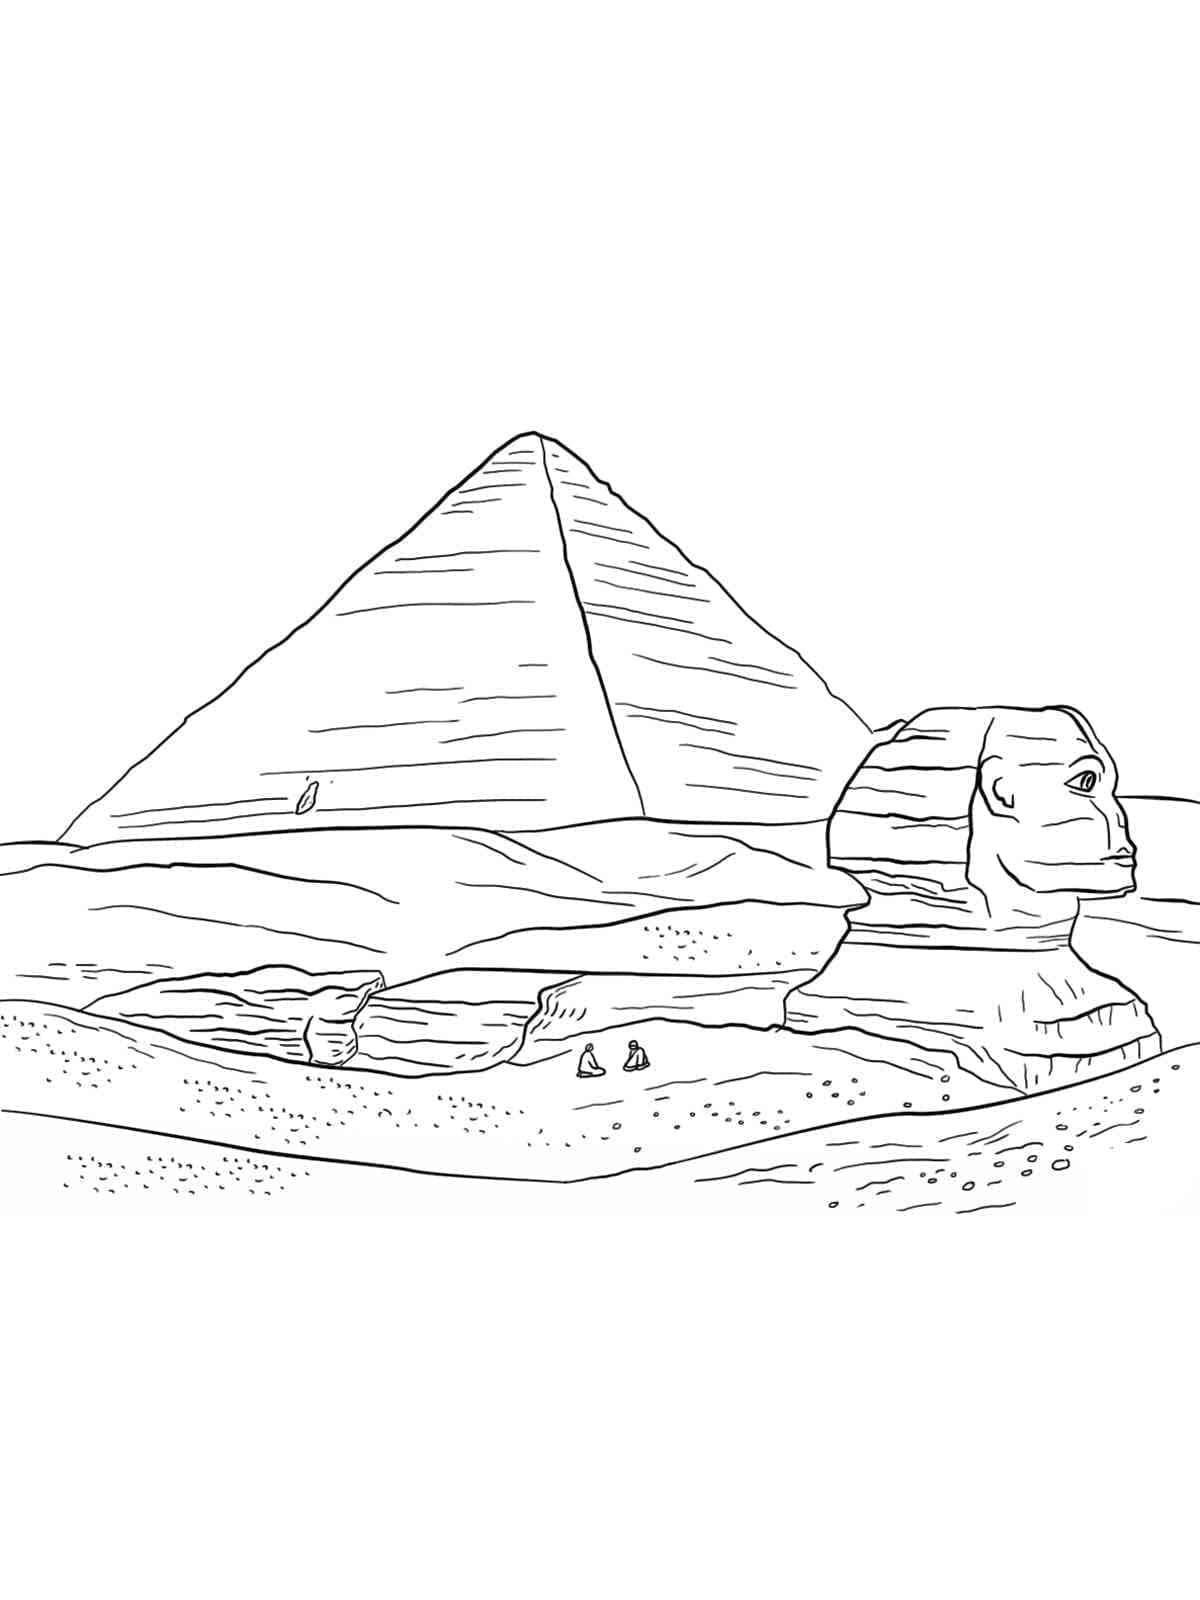 Coloriage Dessin Du Sphinx Et De La Pyramide à imprimer